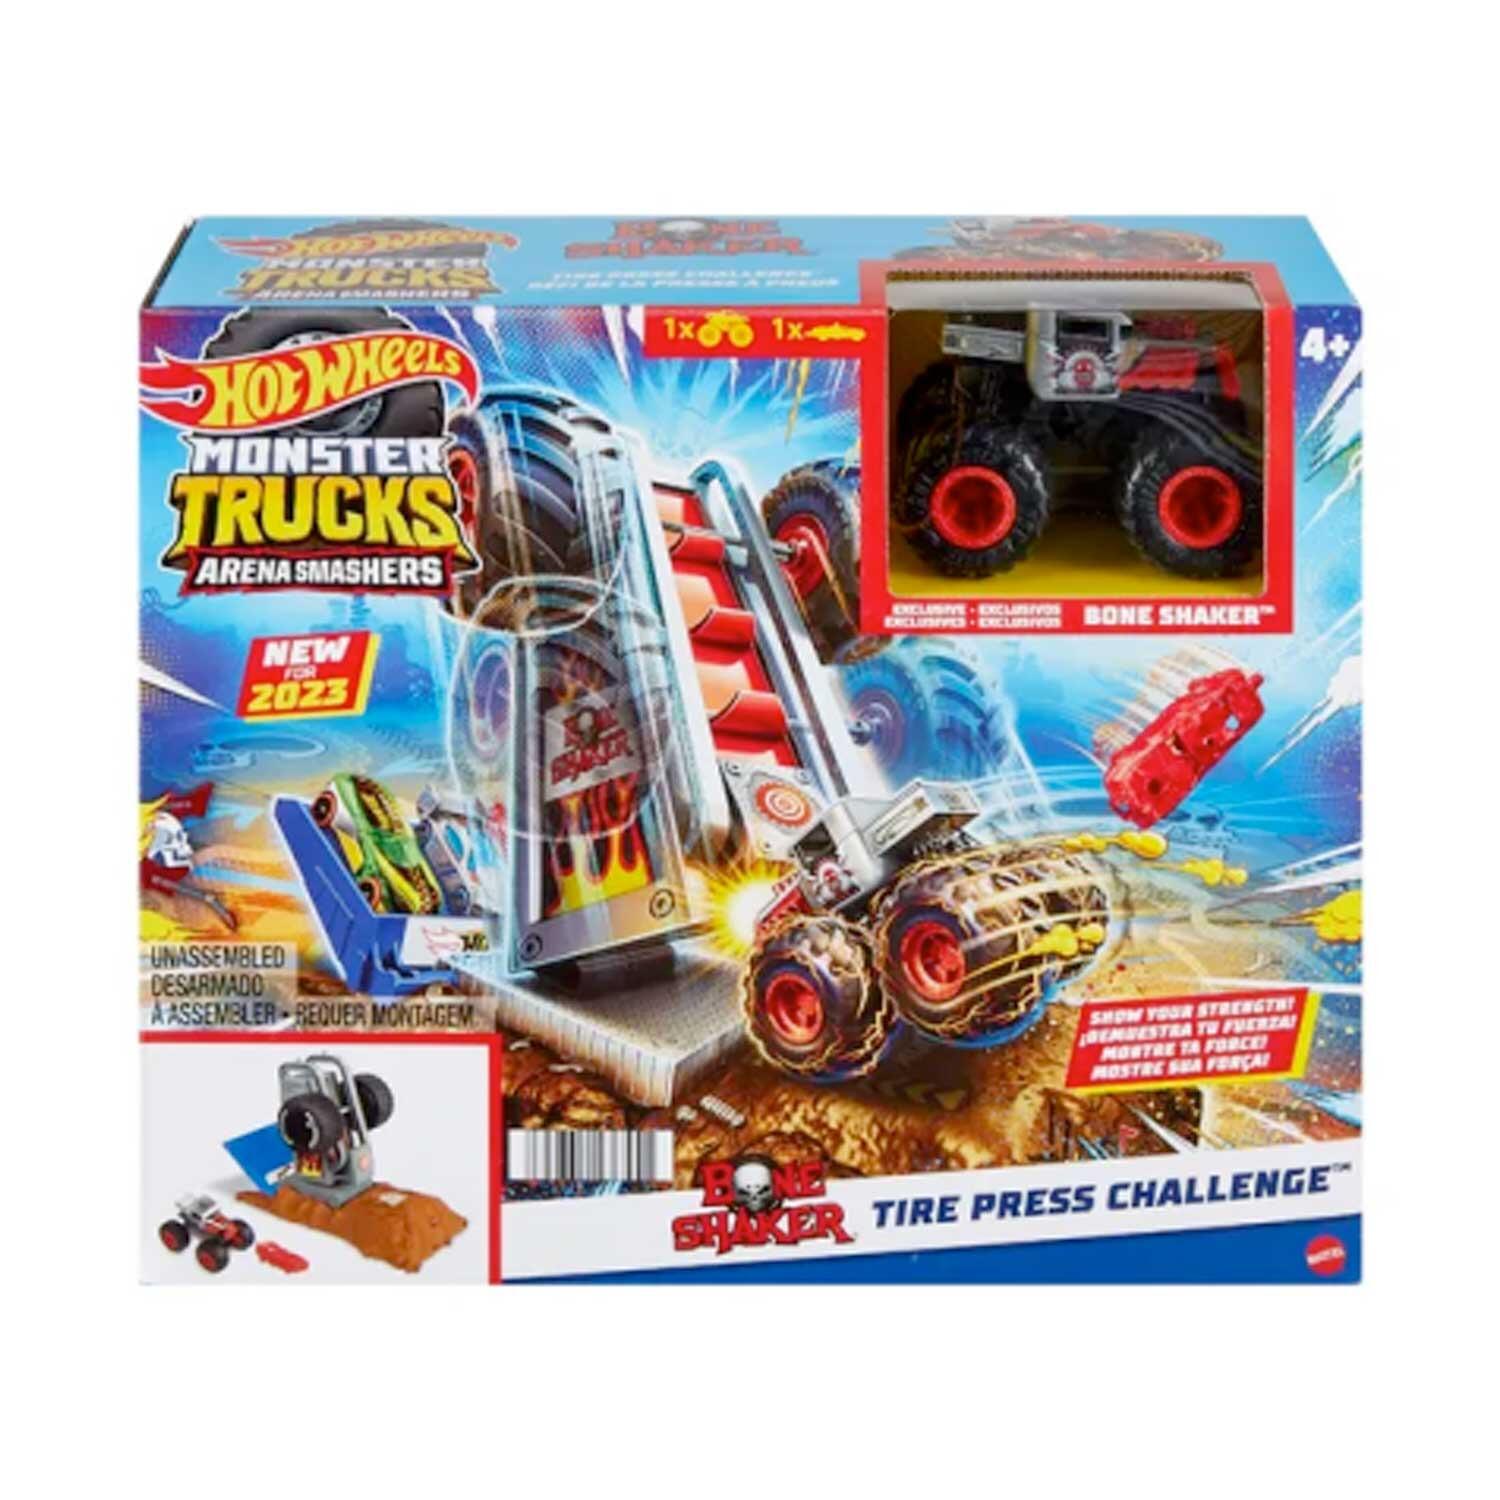 Hot Wheels Monster Trucks Arena Smashers Bone Shaker Tire Press Challenge boxed